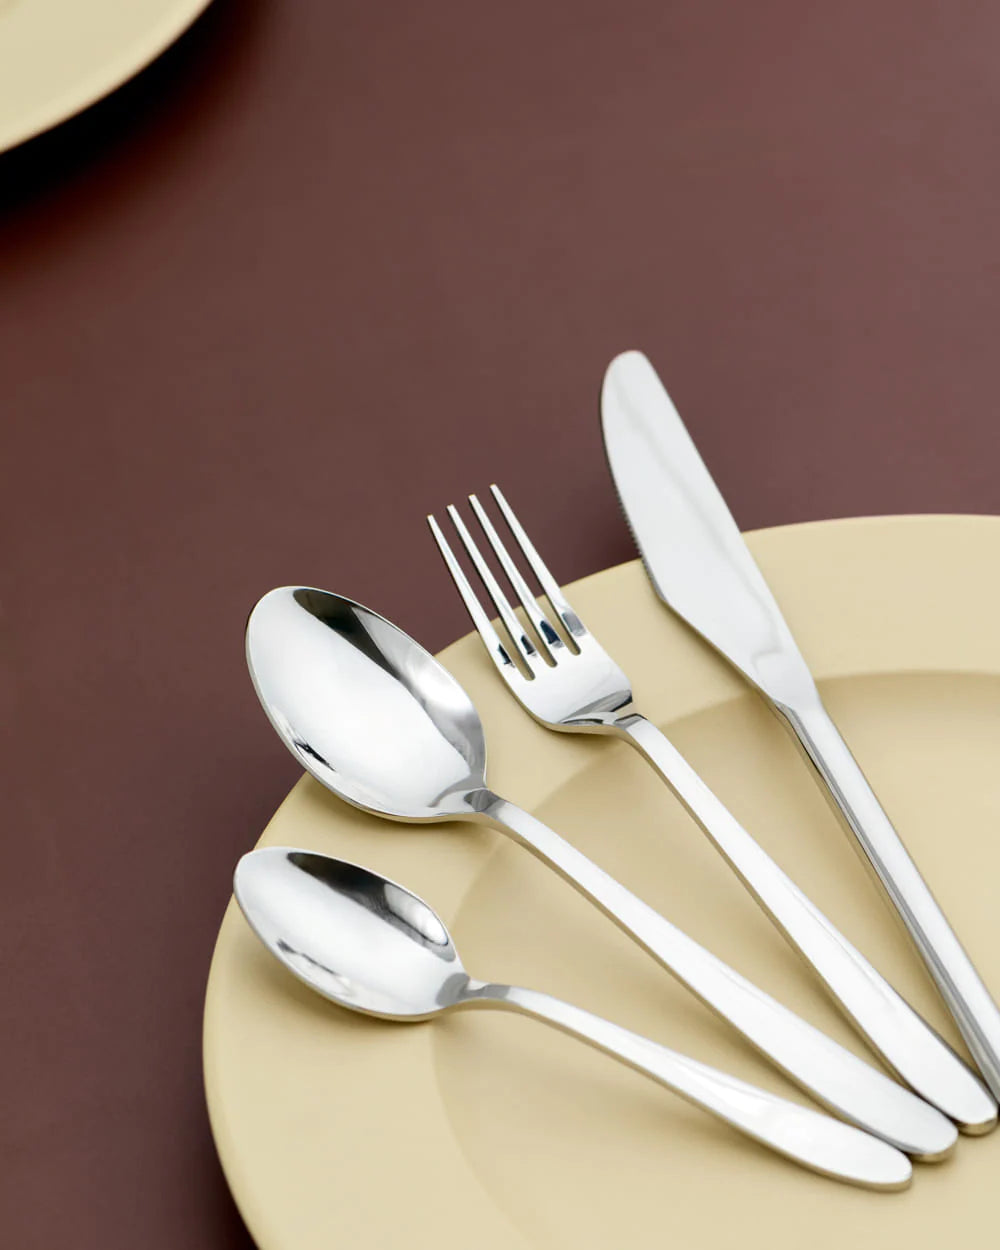 Vintage Premium Silver Cutlery Set - 16 Piece | Vintage Premium Silver Cutlery Set of 16pcs